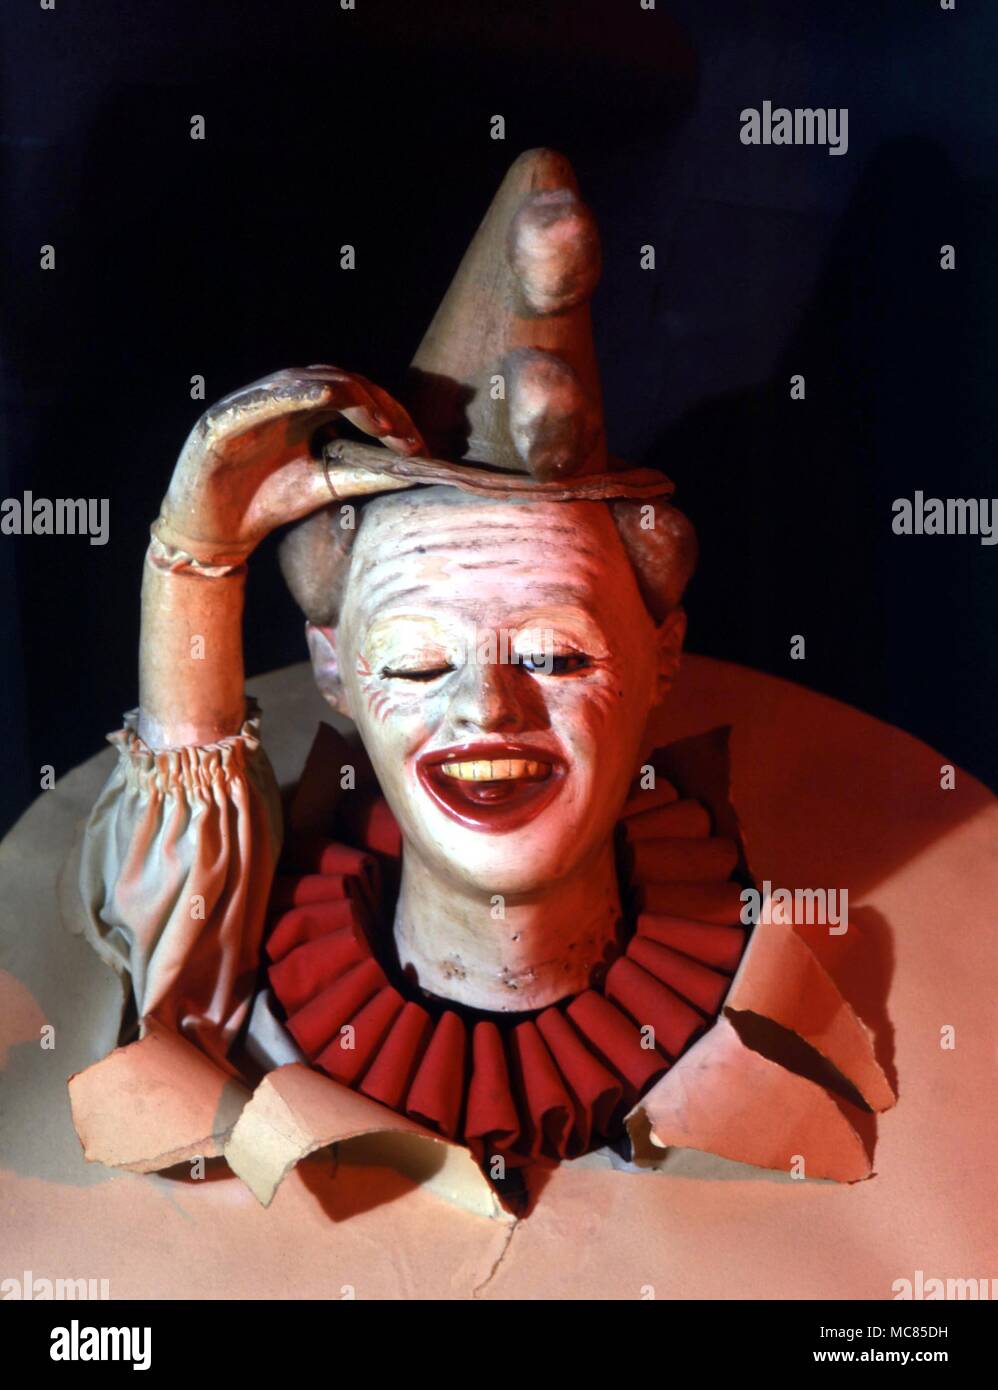 Magische clown, der seinen Hut erste wirft eine rote Kugel zu offenbaren, dann einen Würfel, dann eine blaue Kugel, und schließlich überhaupt nichts. Automat aus dem Museum der Automaten, York. Stockfoto